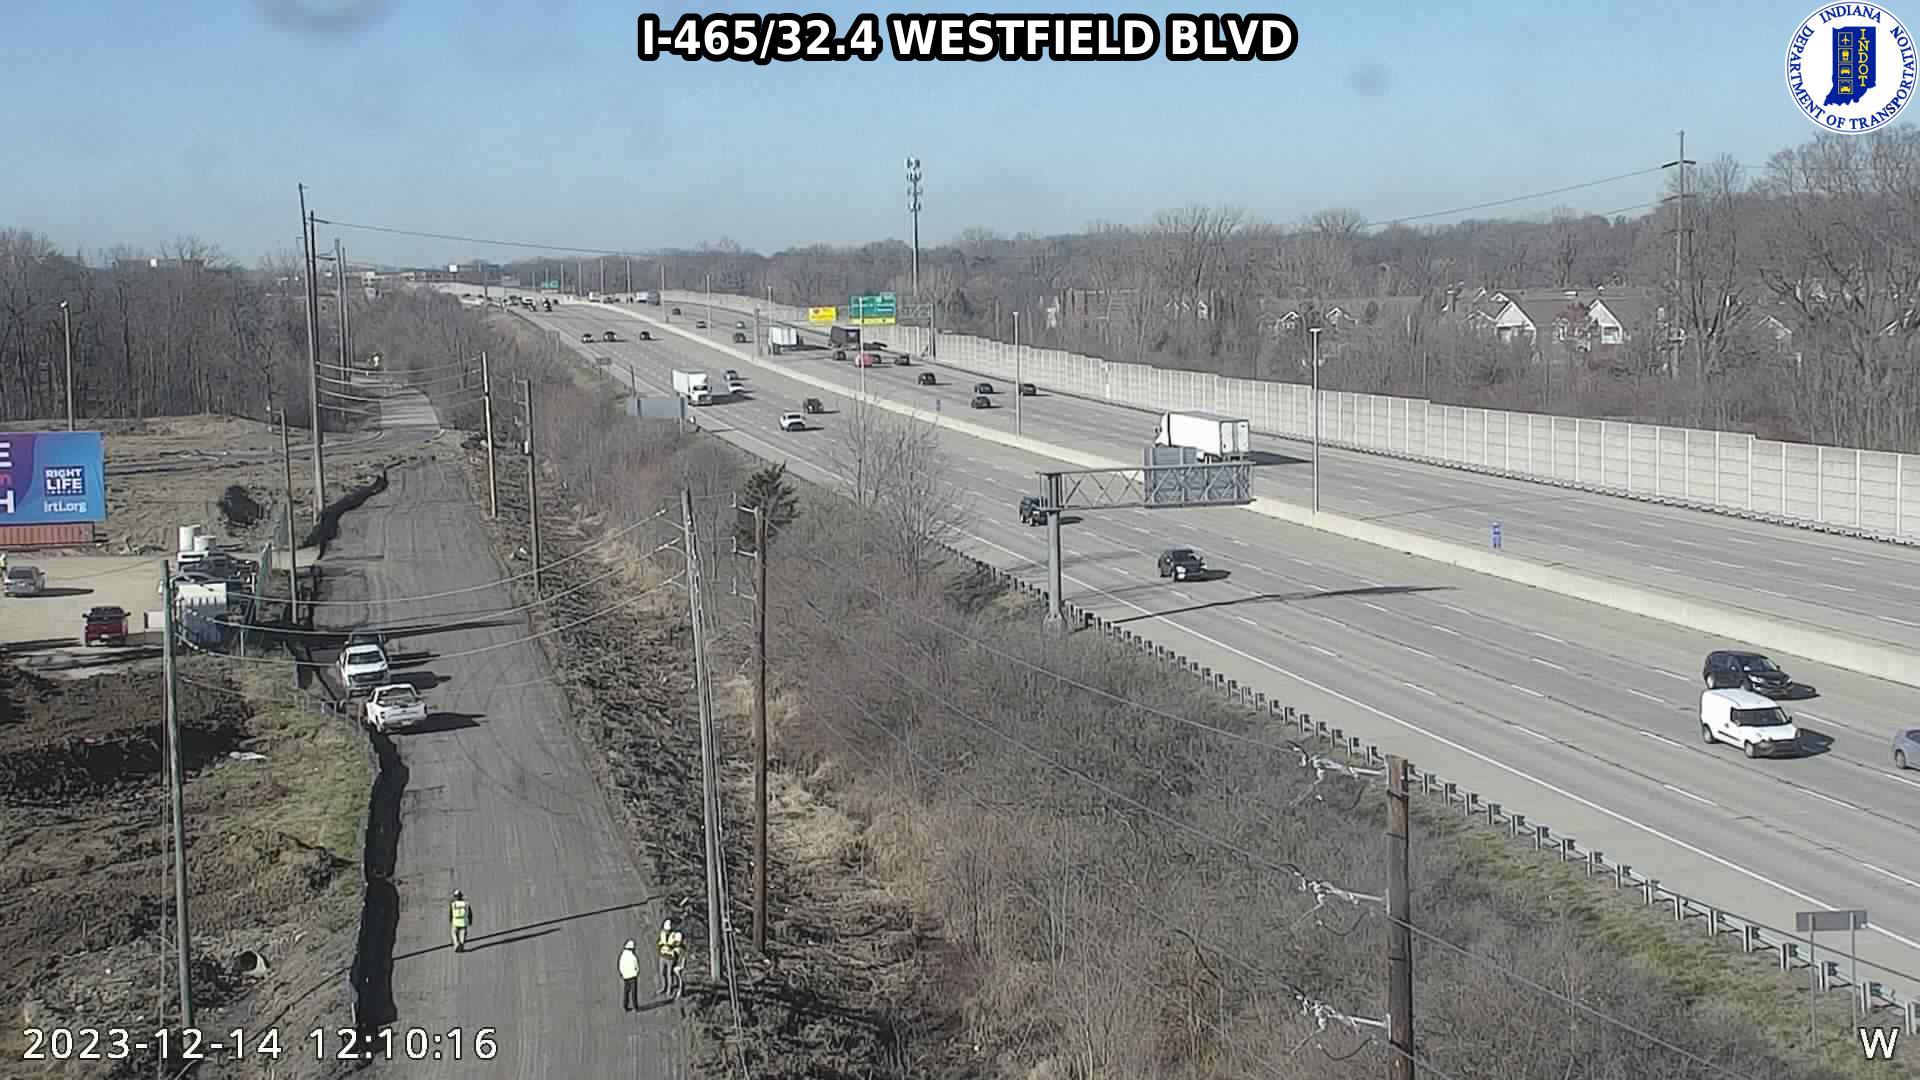 Nora: I-465: I-465/32.4 WESTFIELD BLVD Traffic Camera